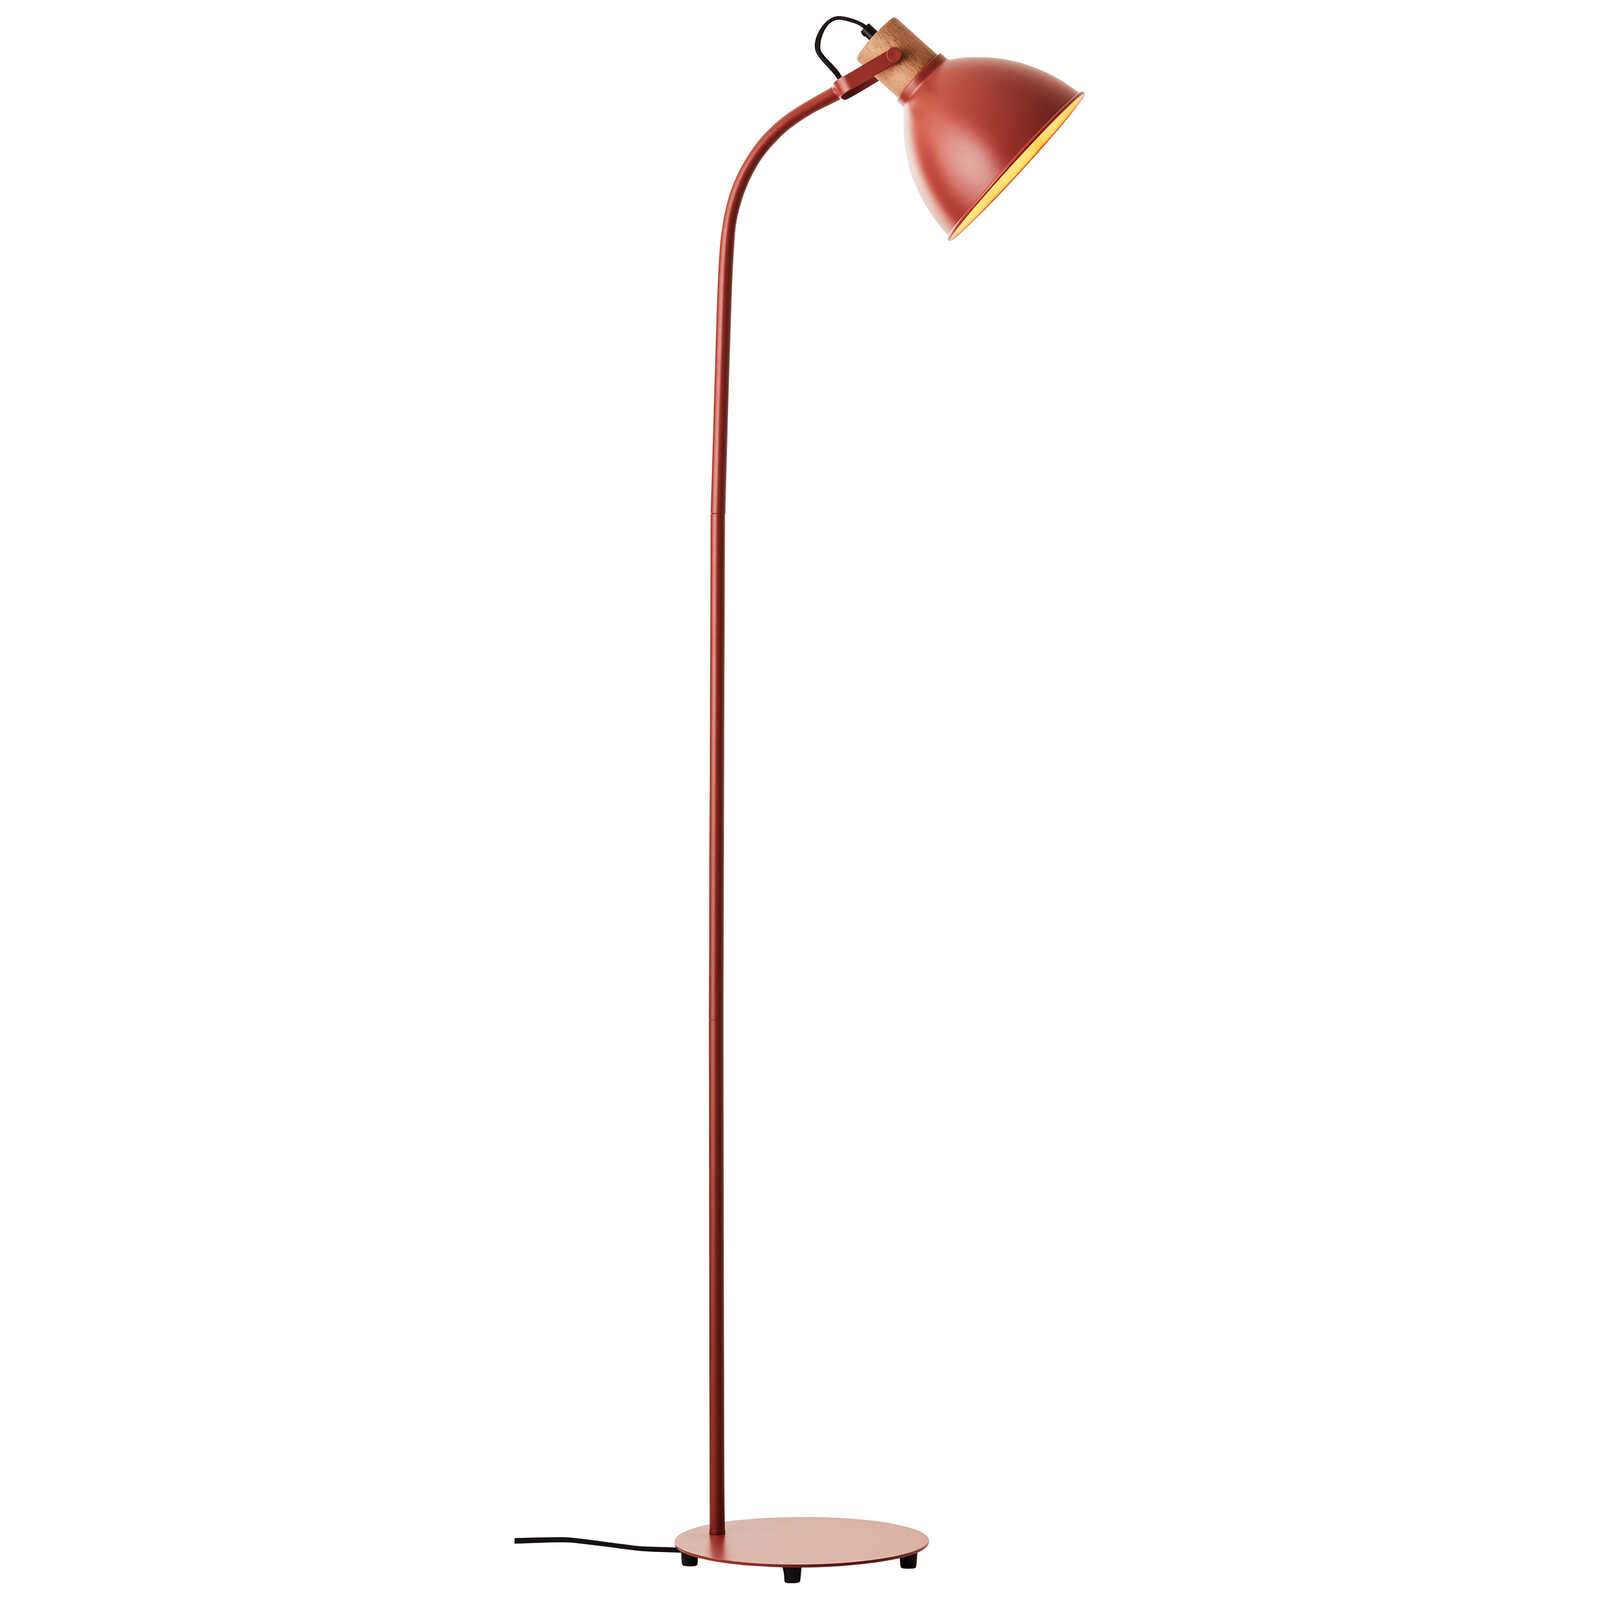             Lámpara de pie de madera - Franziska 5 - Rojo
        